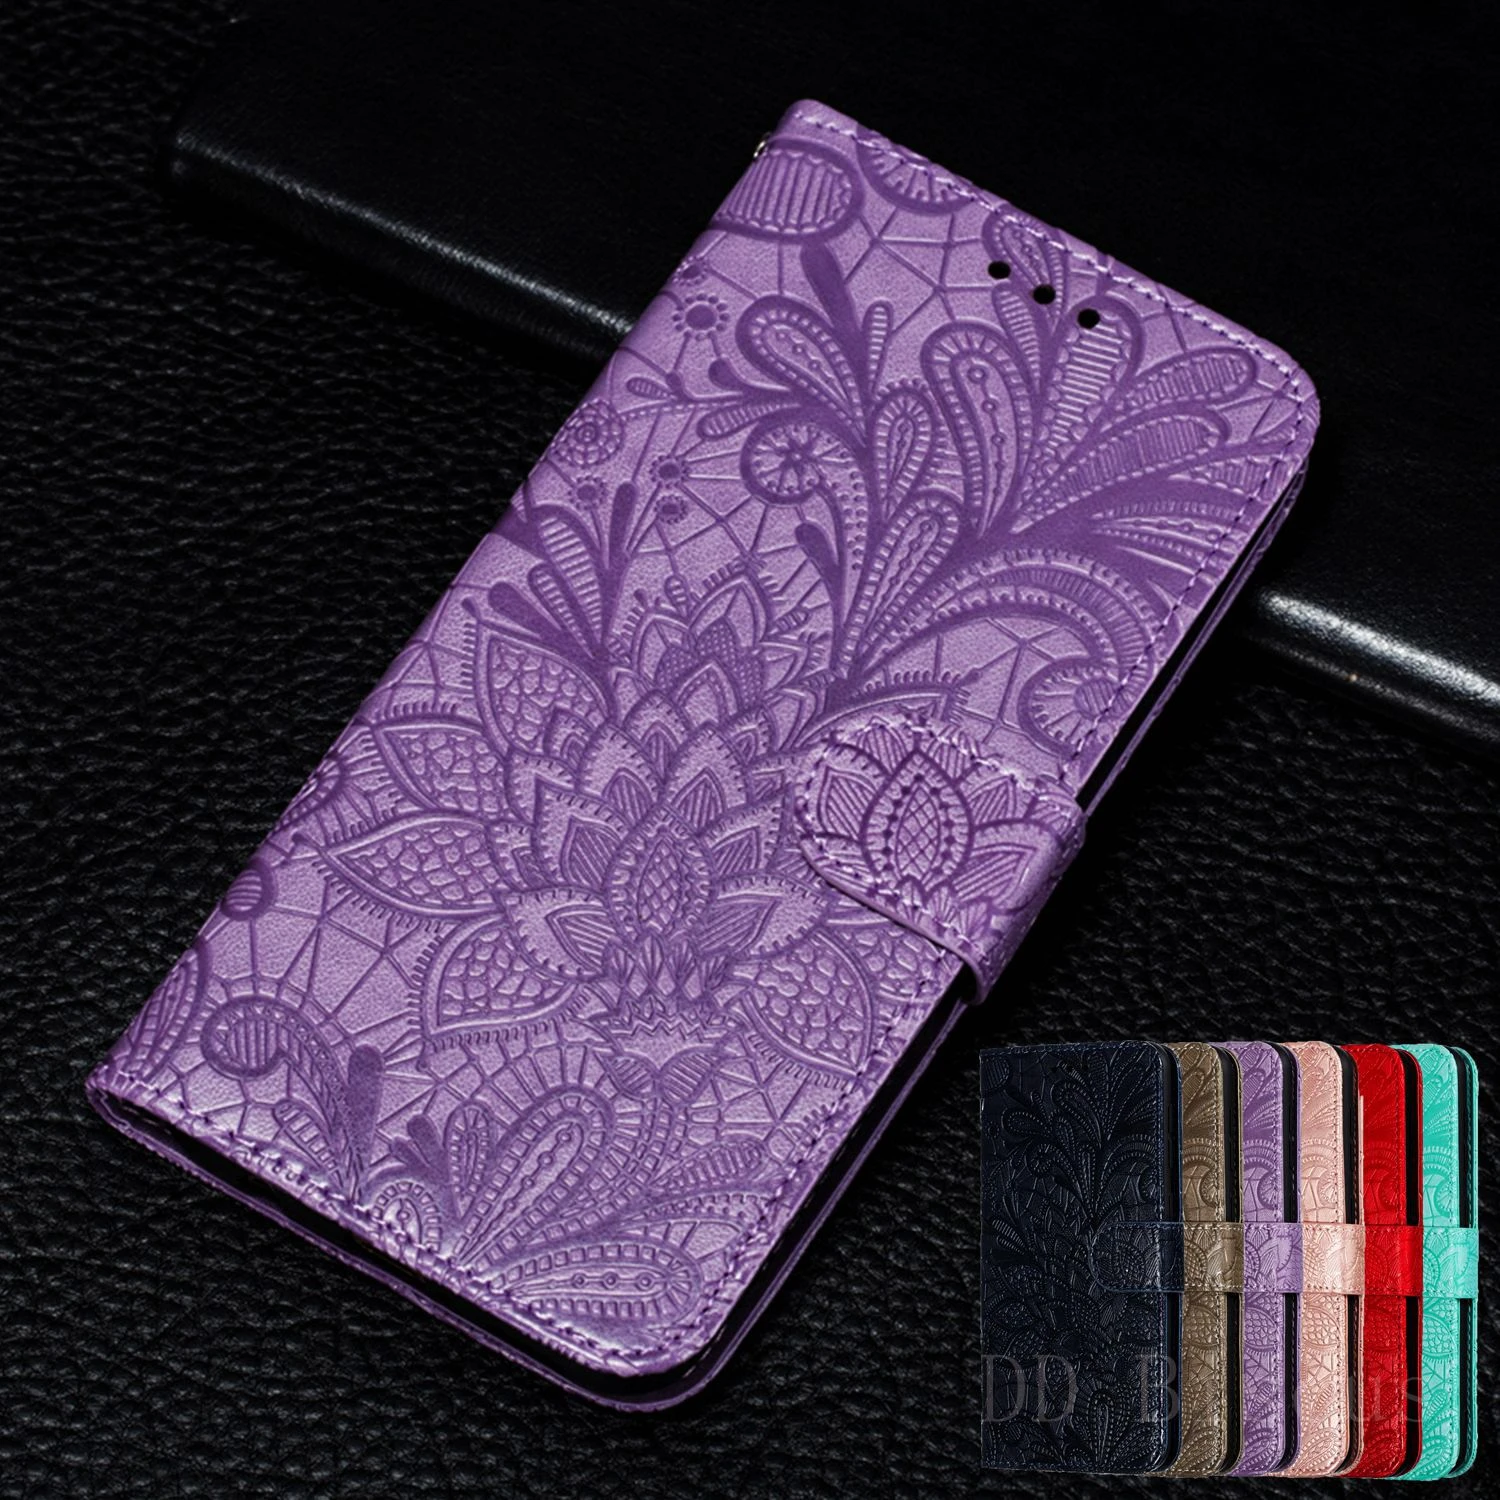 Huawei Honor 20 Pro 9X 10i 10 Lite 7A 7C 8A 9A 9S 9C 8S 8X 20S 9 Lite Y5 Y7 Y6 2019 Leather Case 3D Embossing Lace flower wallet huawei waterproof phone case